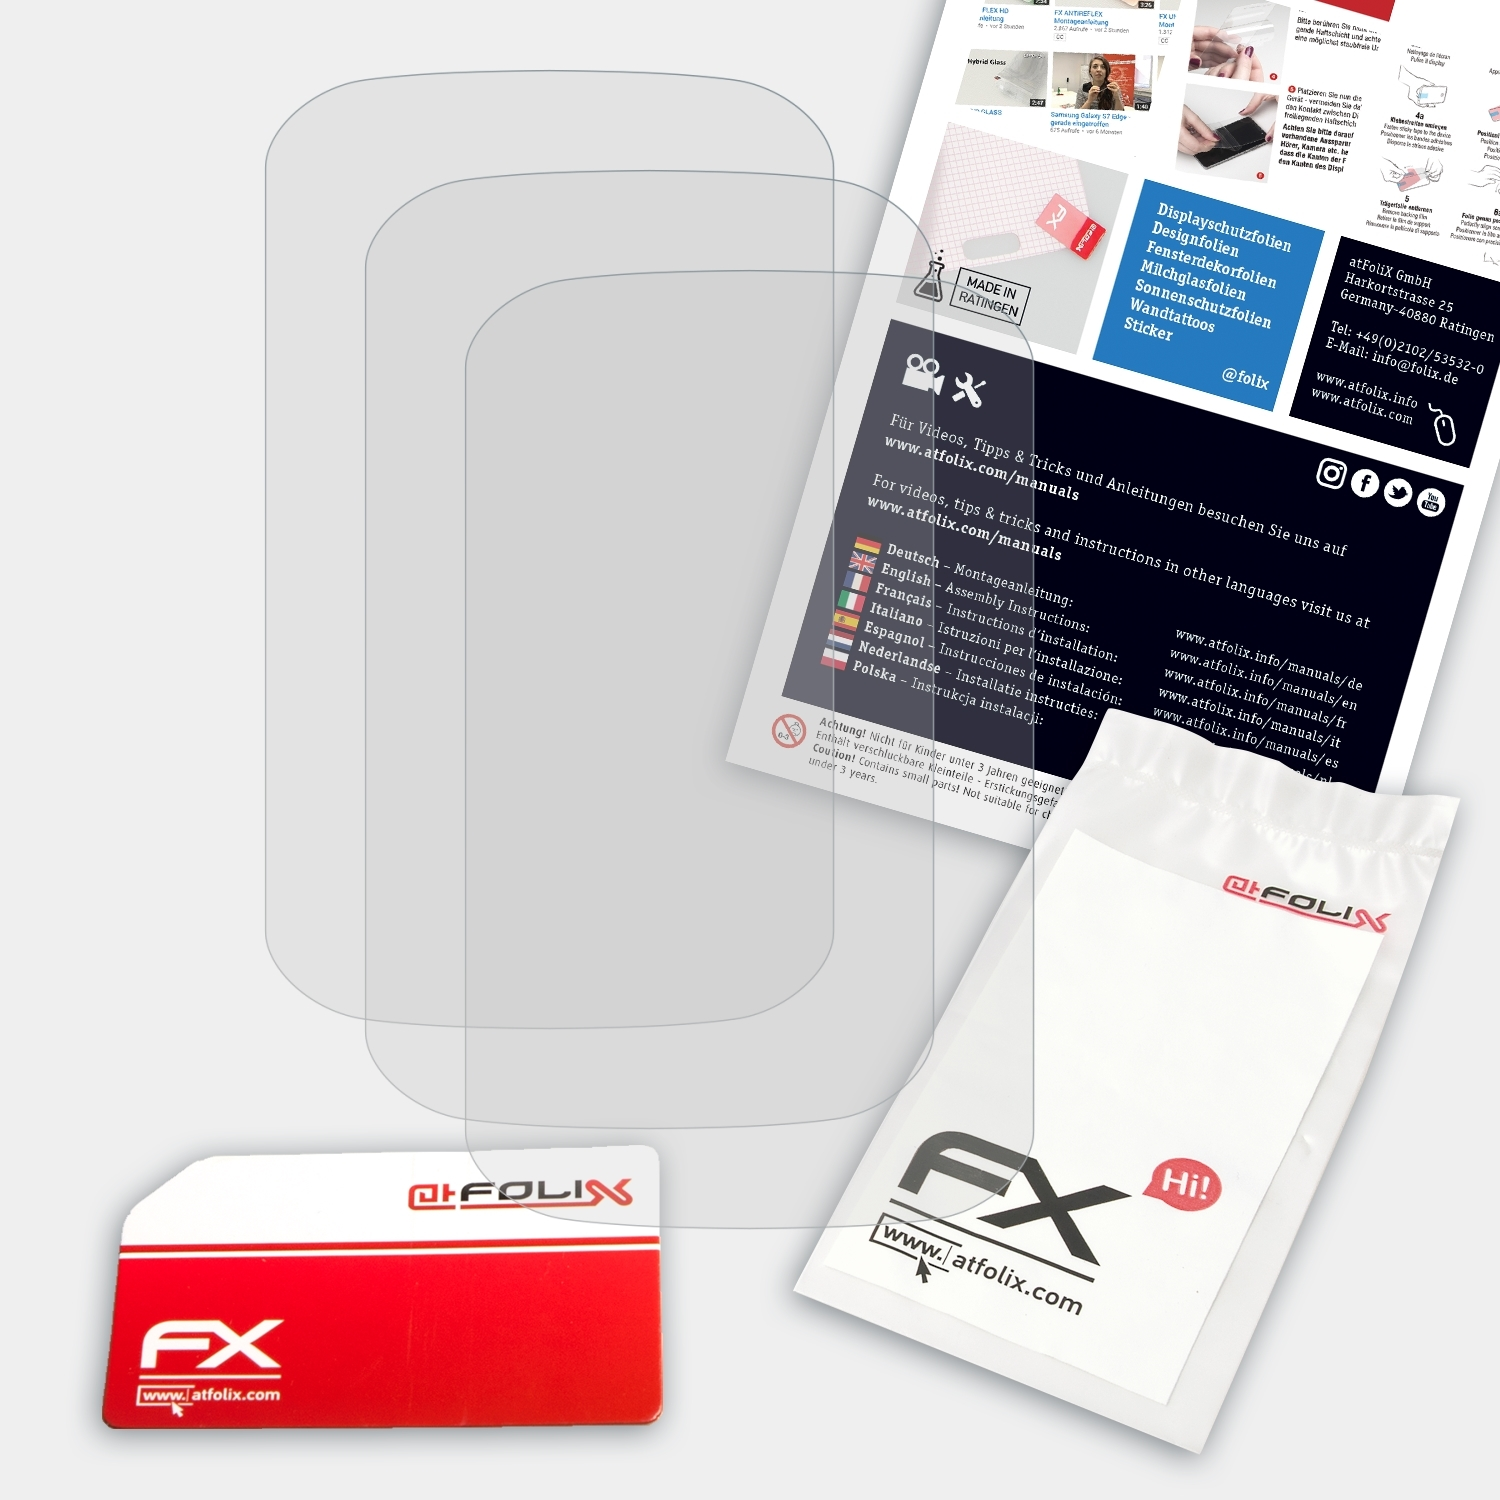 Explore 3x Edge 1000) ATFOLIX Displayschutz(für Garmin FX-Antireflex